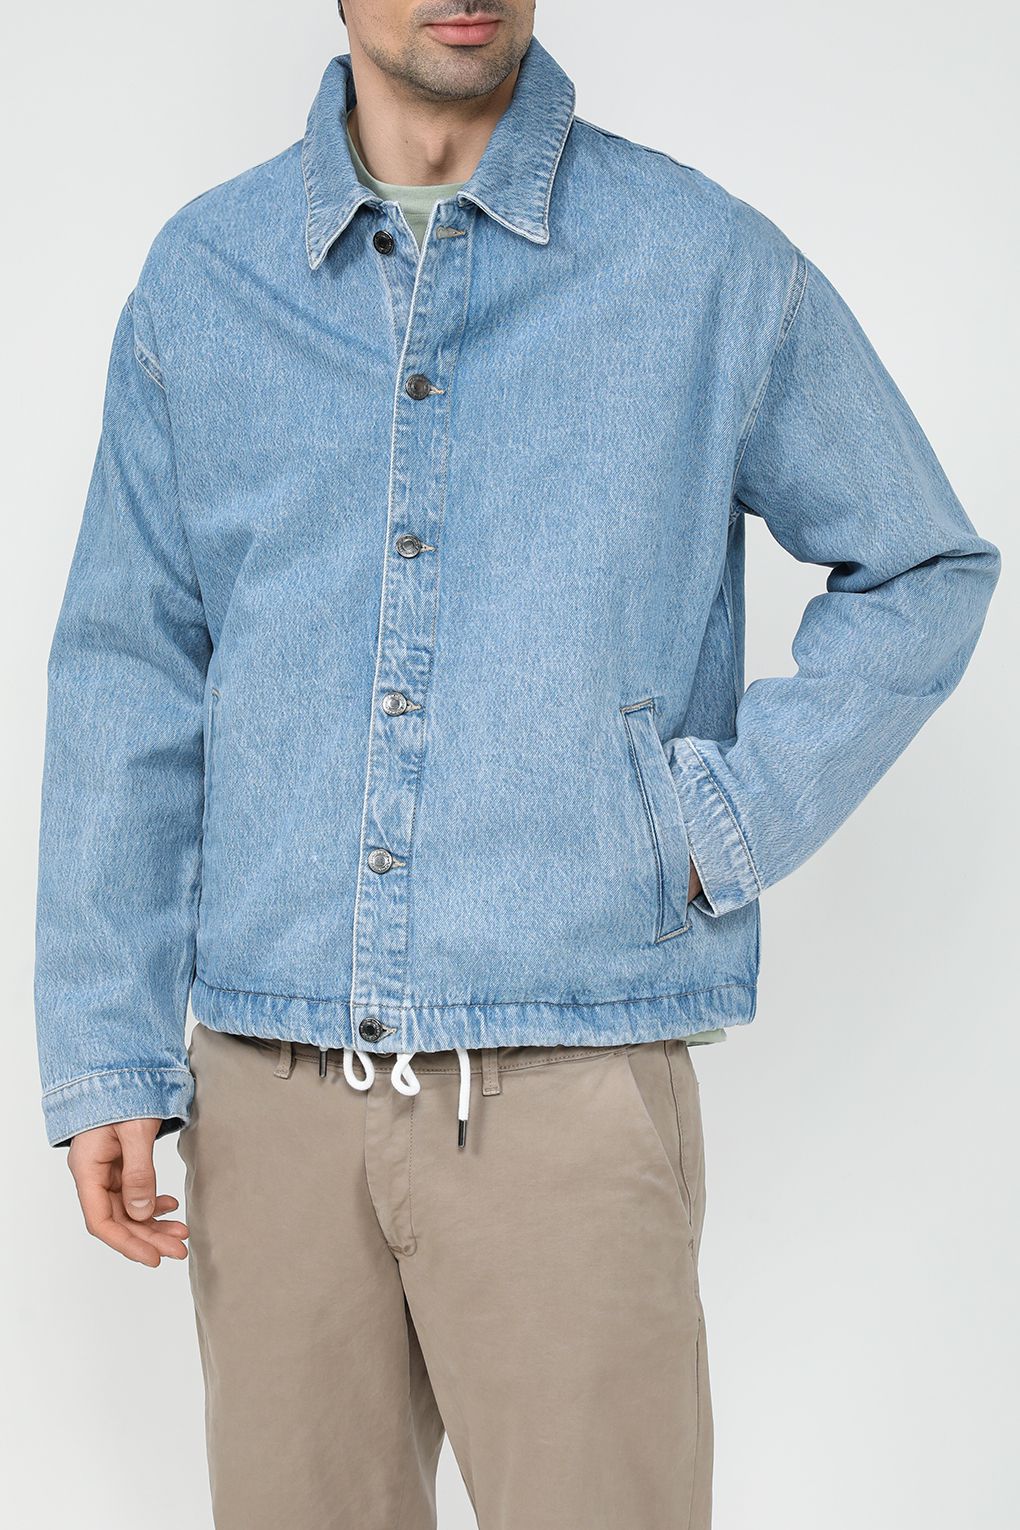 Джинсовая куртка мужская COLORPLAY CP24029340-005 синяя 52 RU